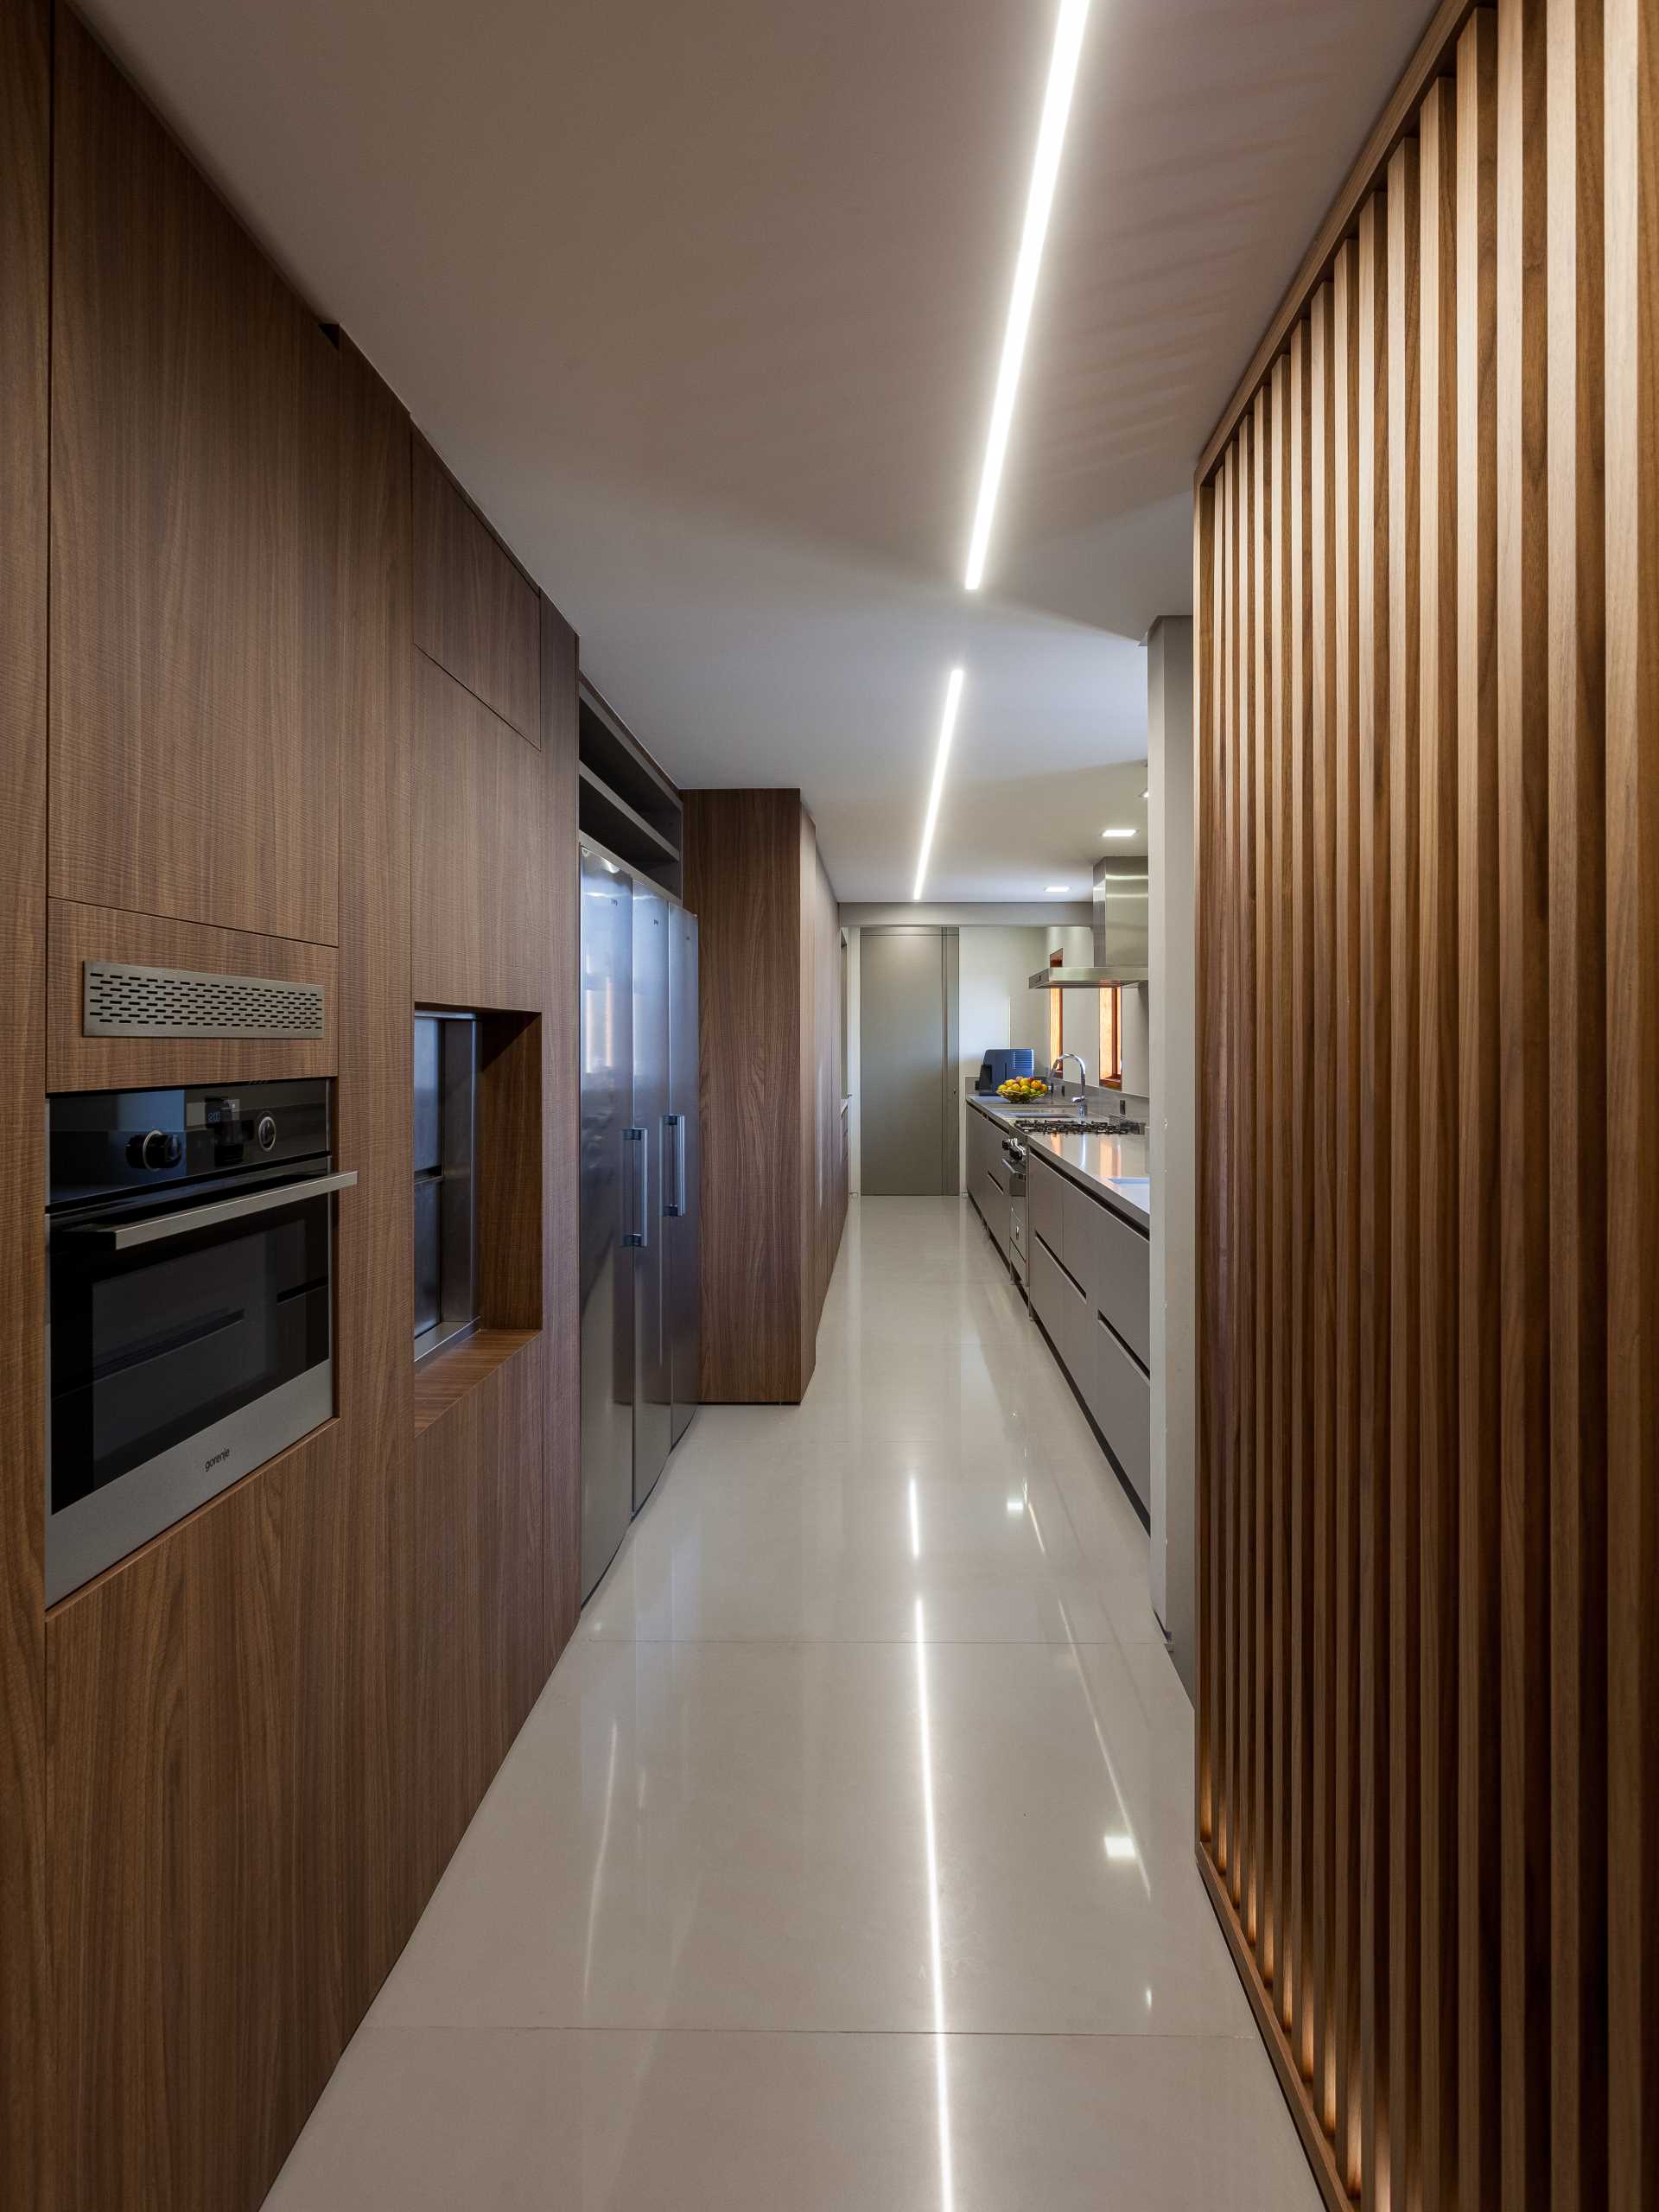 آشپزخانه طولی با یک گذرگاه طراحی شده است که آن را به انباری و بعداً به اتاق غذاخوری متصل می کند.